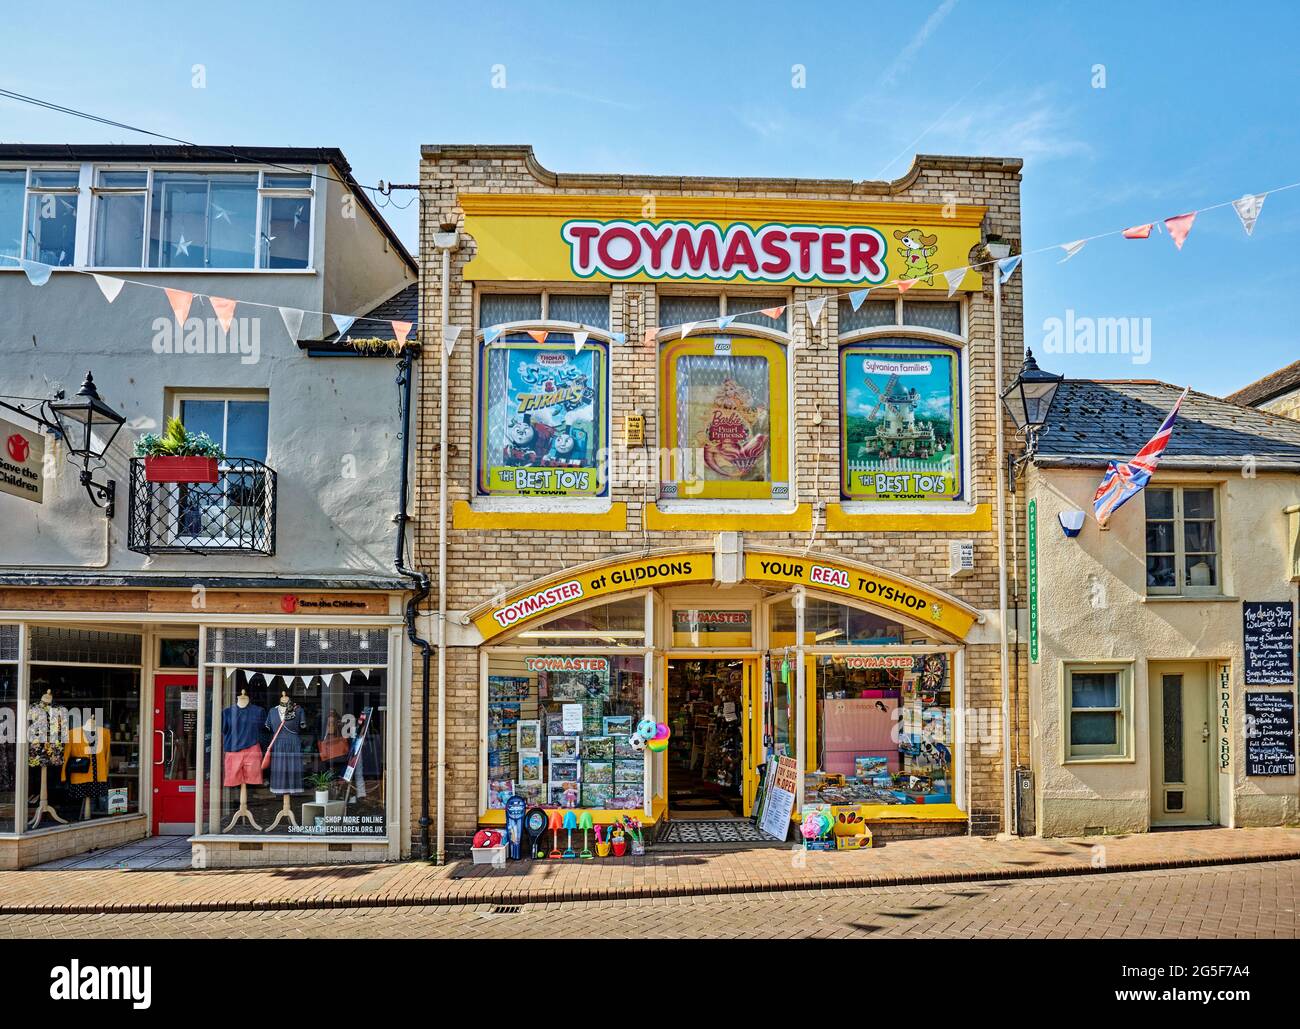 Toymaster at Gliddons, un negozio di giocattoli tradizionale nel centro di Sidmouth, una città costiera del Devon, sito patrimonio dell'umanità della Jurassic Coast Foto Stock